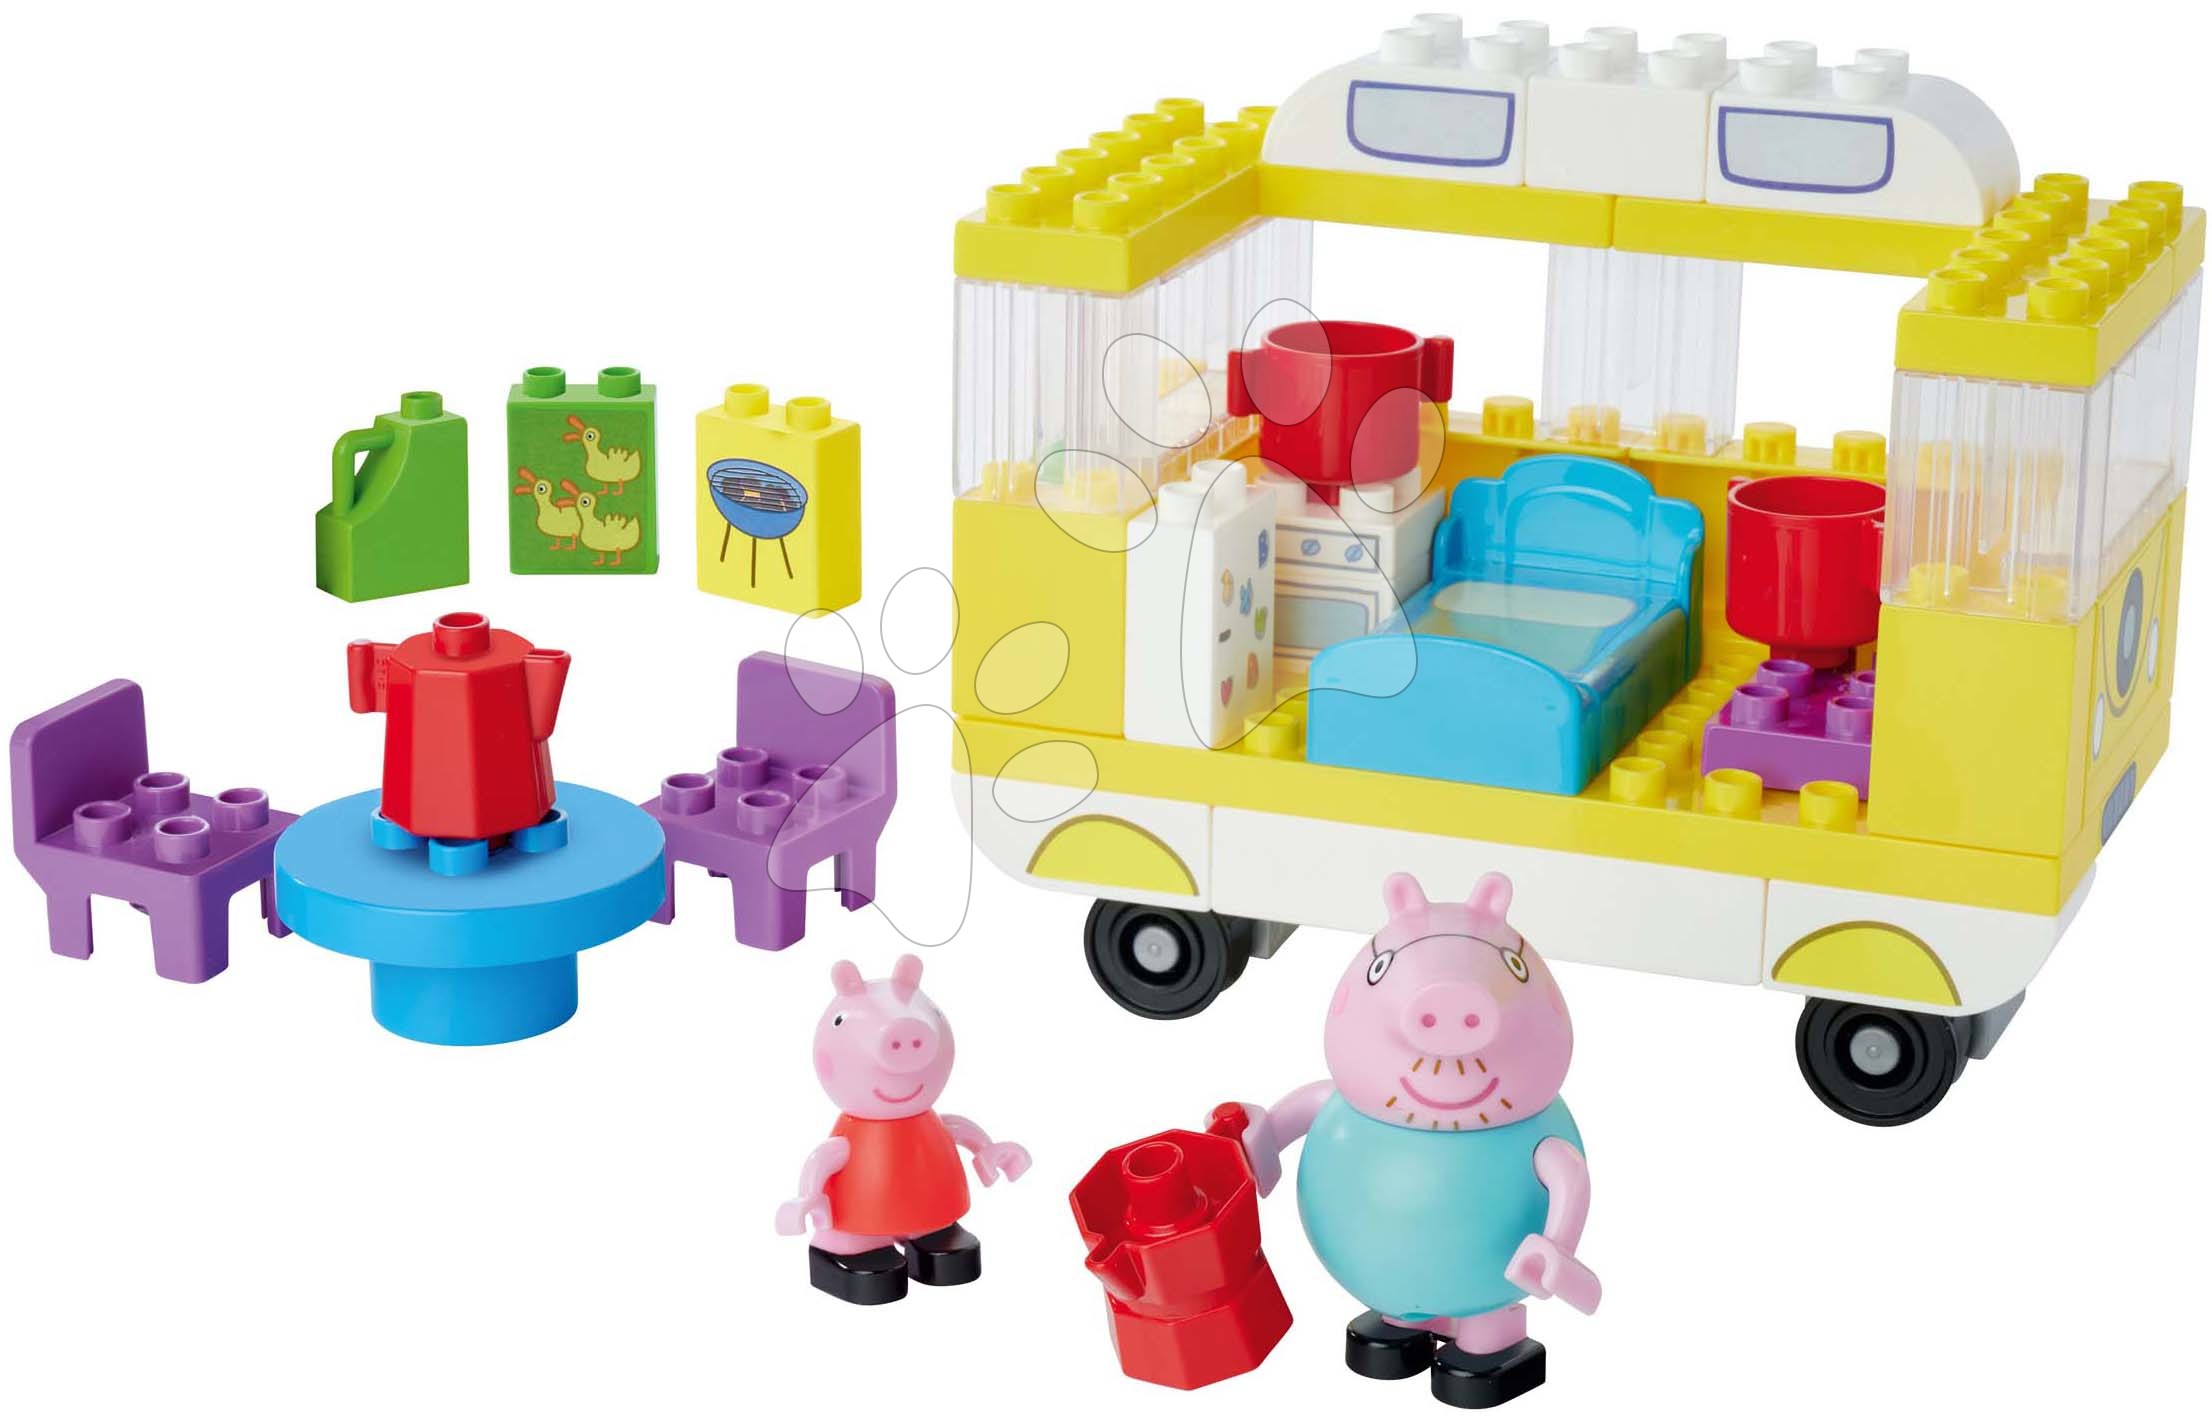 Stavebnice ako LEGO - Stavebnica Peppa Pig Campervan PlayBig Bloxx BIG auto karavan s výbavou a 2 postavičky 52 dielov od 1,5-5 rokov